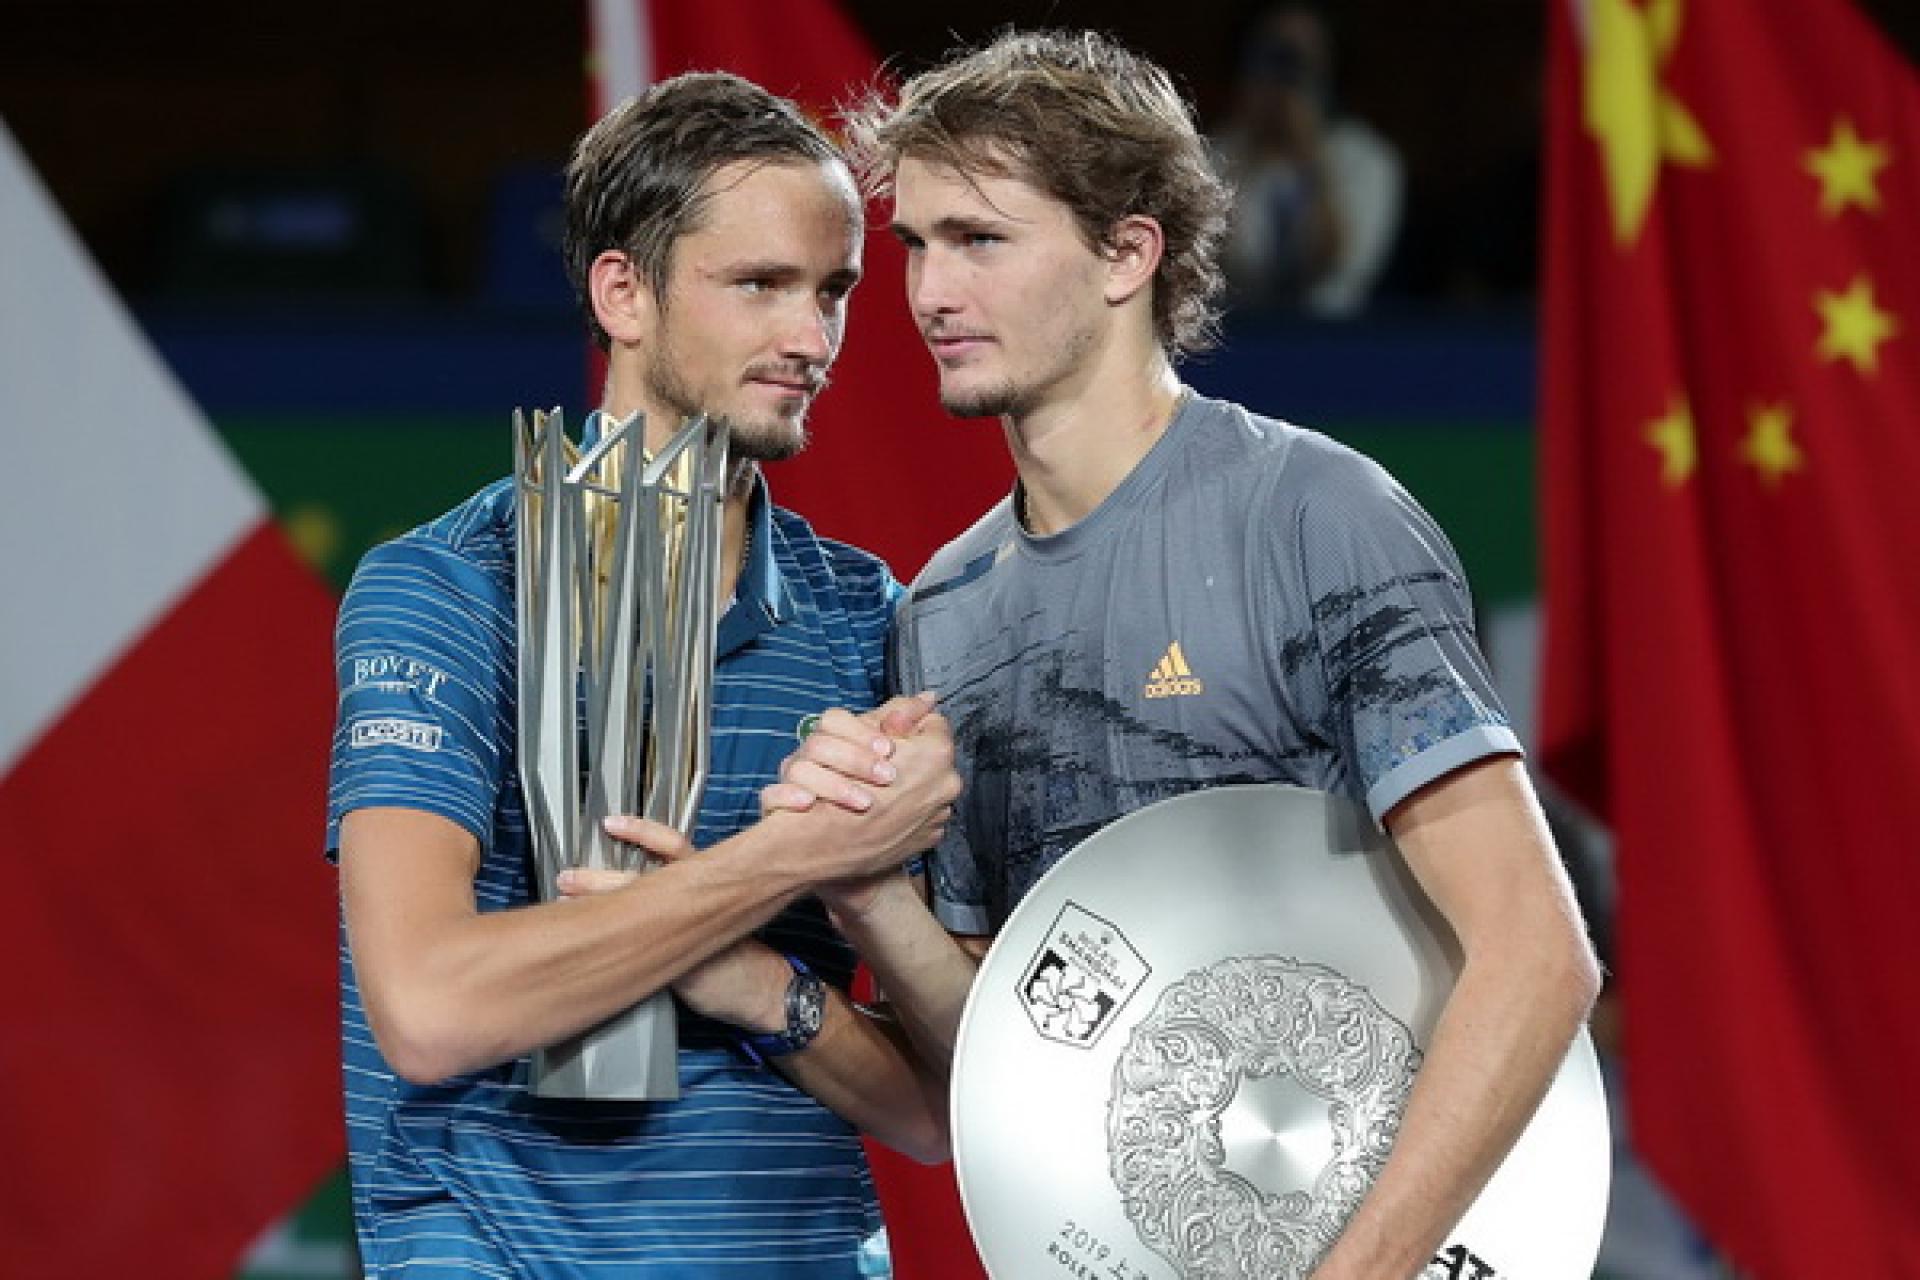 Pronostici tennis live oggi Nitto ATP Finals: la finale 2021 a Torino è Zverev - Medvedev